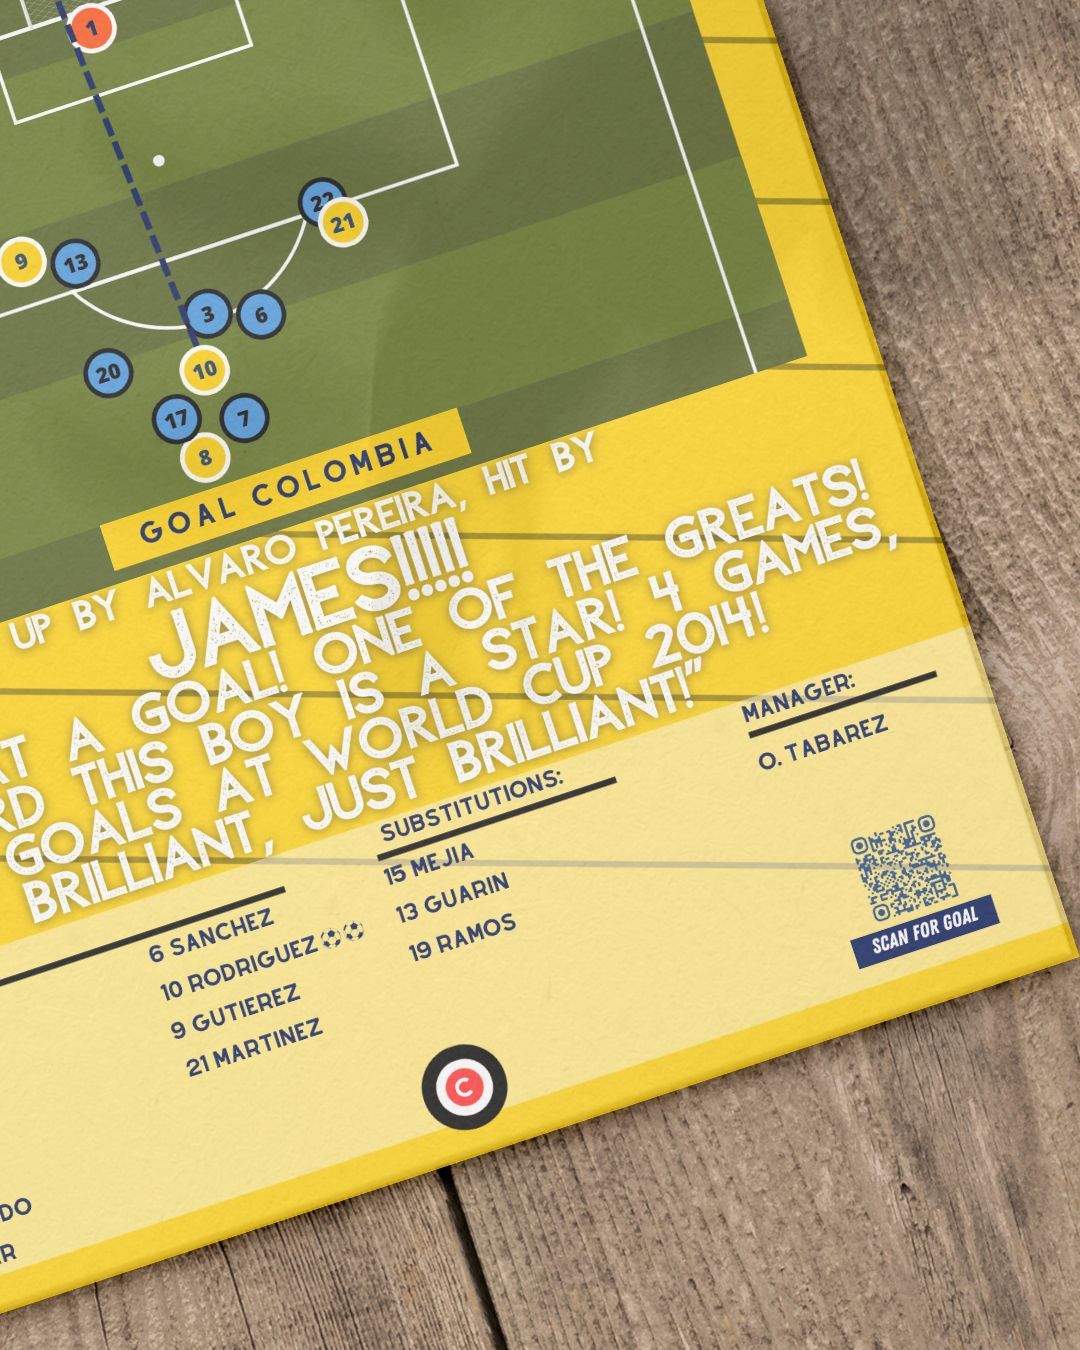 Famoso gol de volea de James Rodriguez vs Uruguay en el Mundial 2014- Colombia